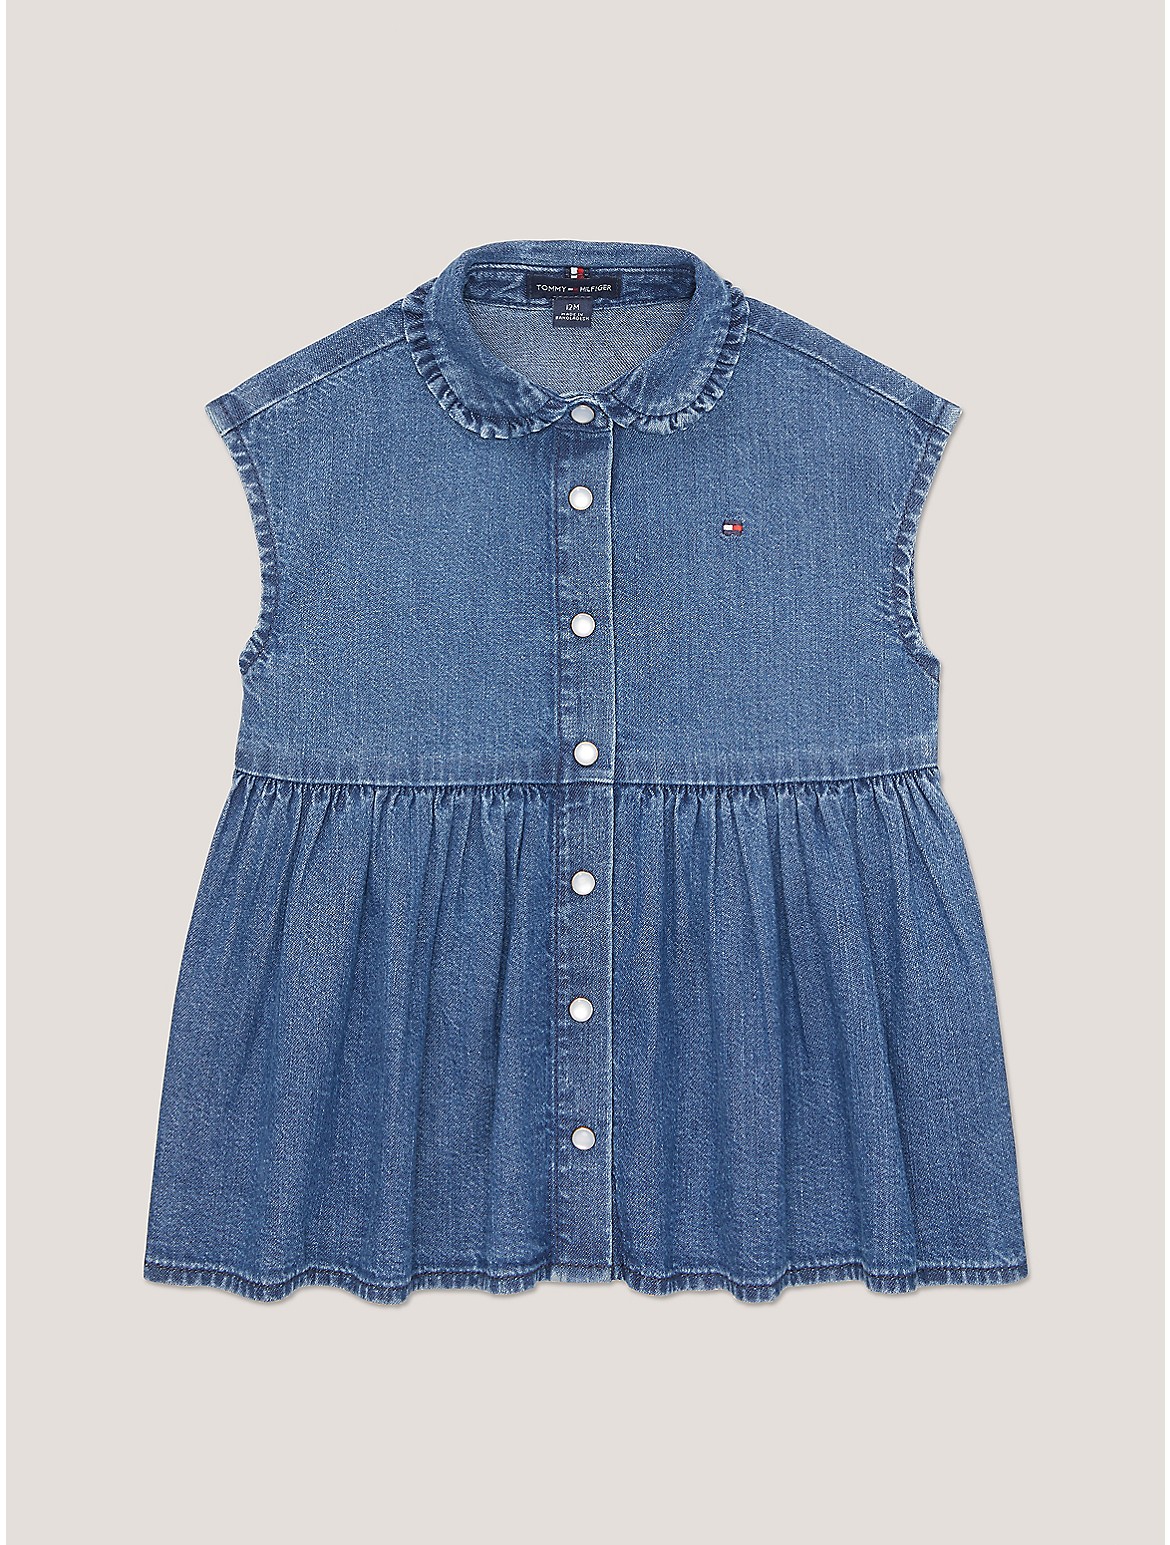 Tommy Hilfiger Girls' Babies' Ruffle Collar Dress